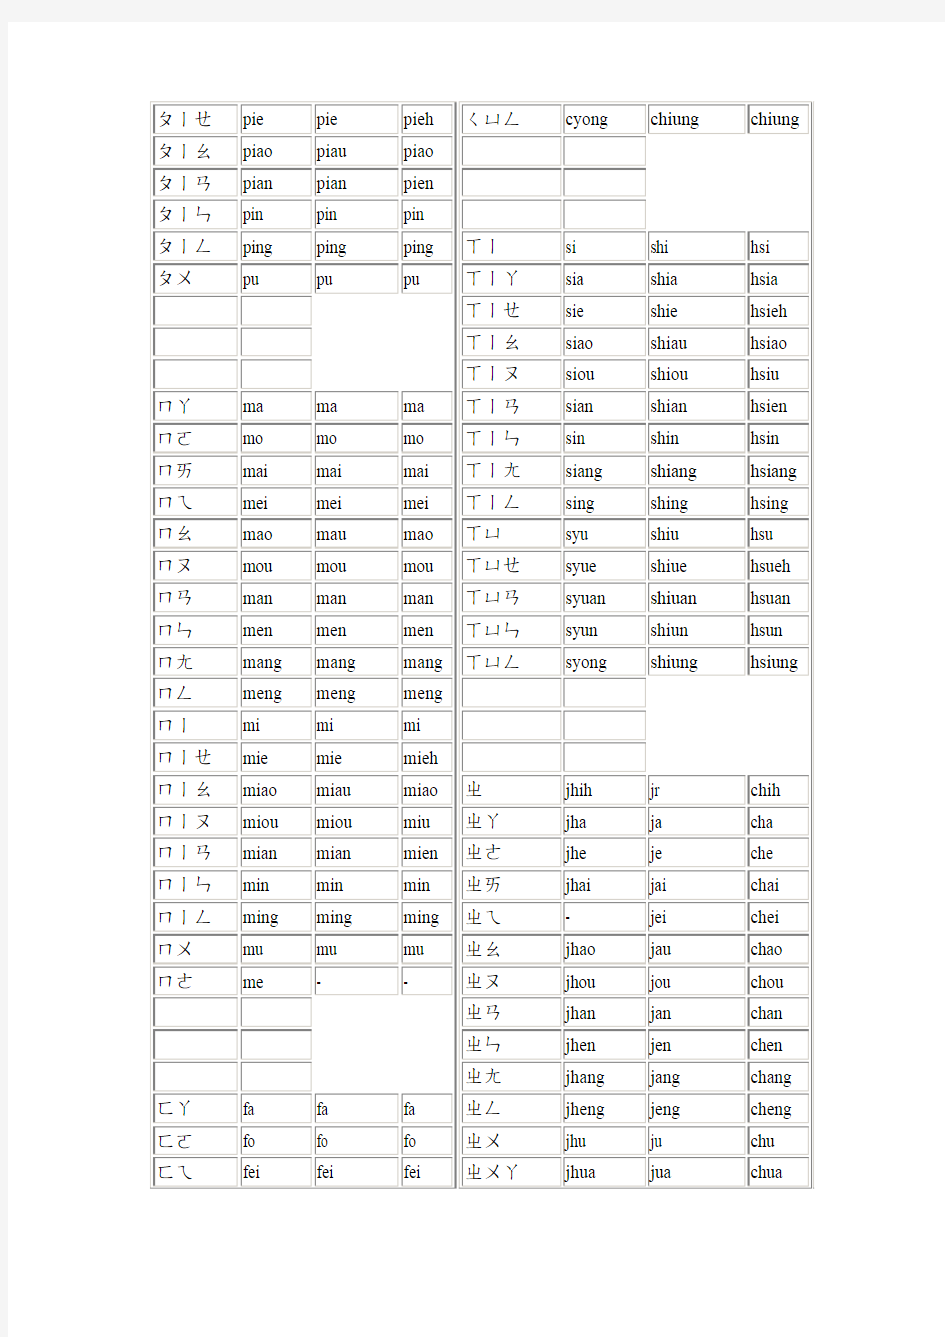 国语罗马拼音对照表